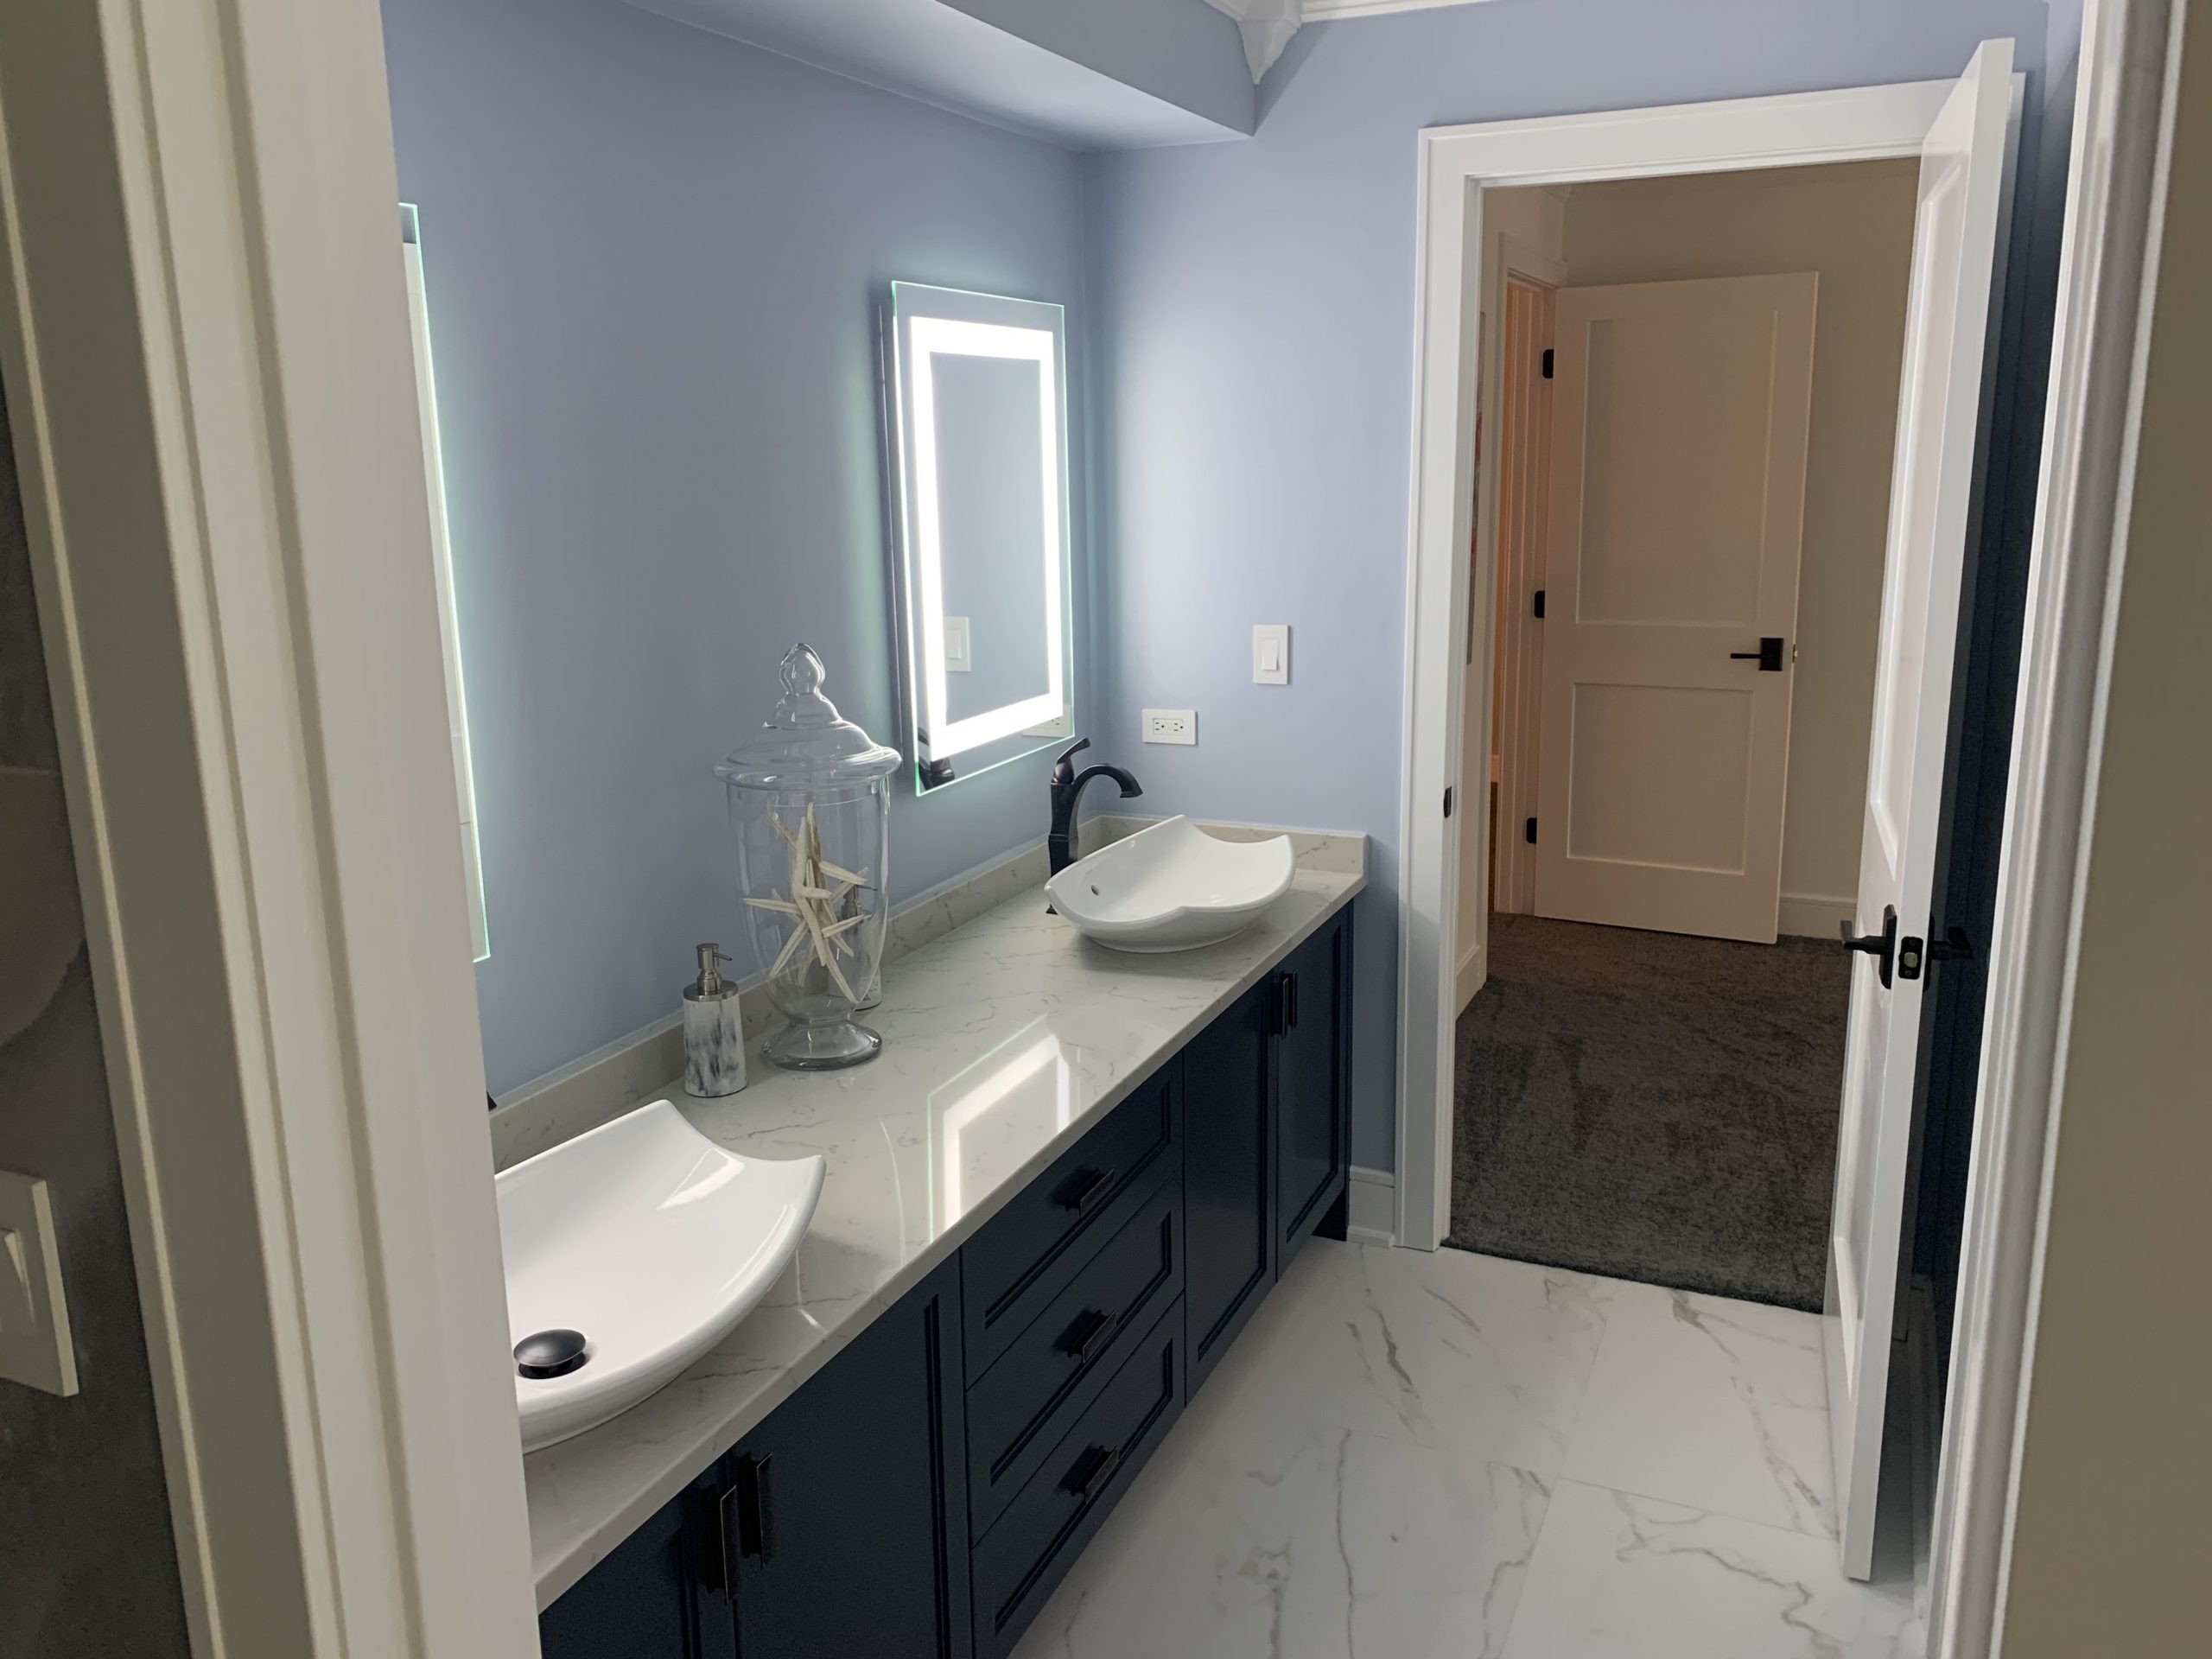 bathroom renovations remodel contractors